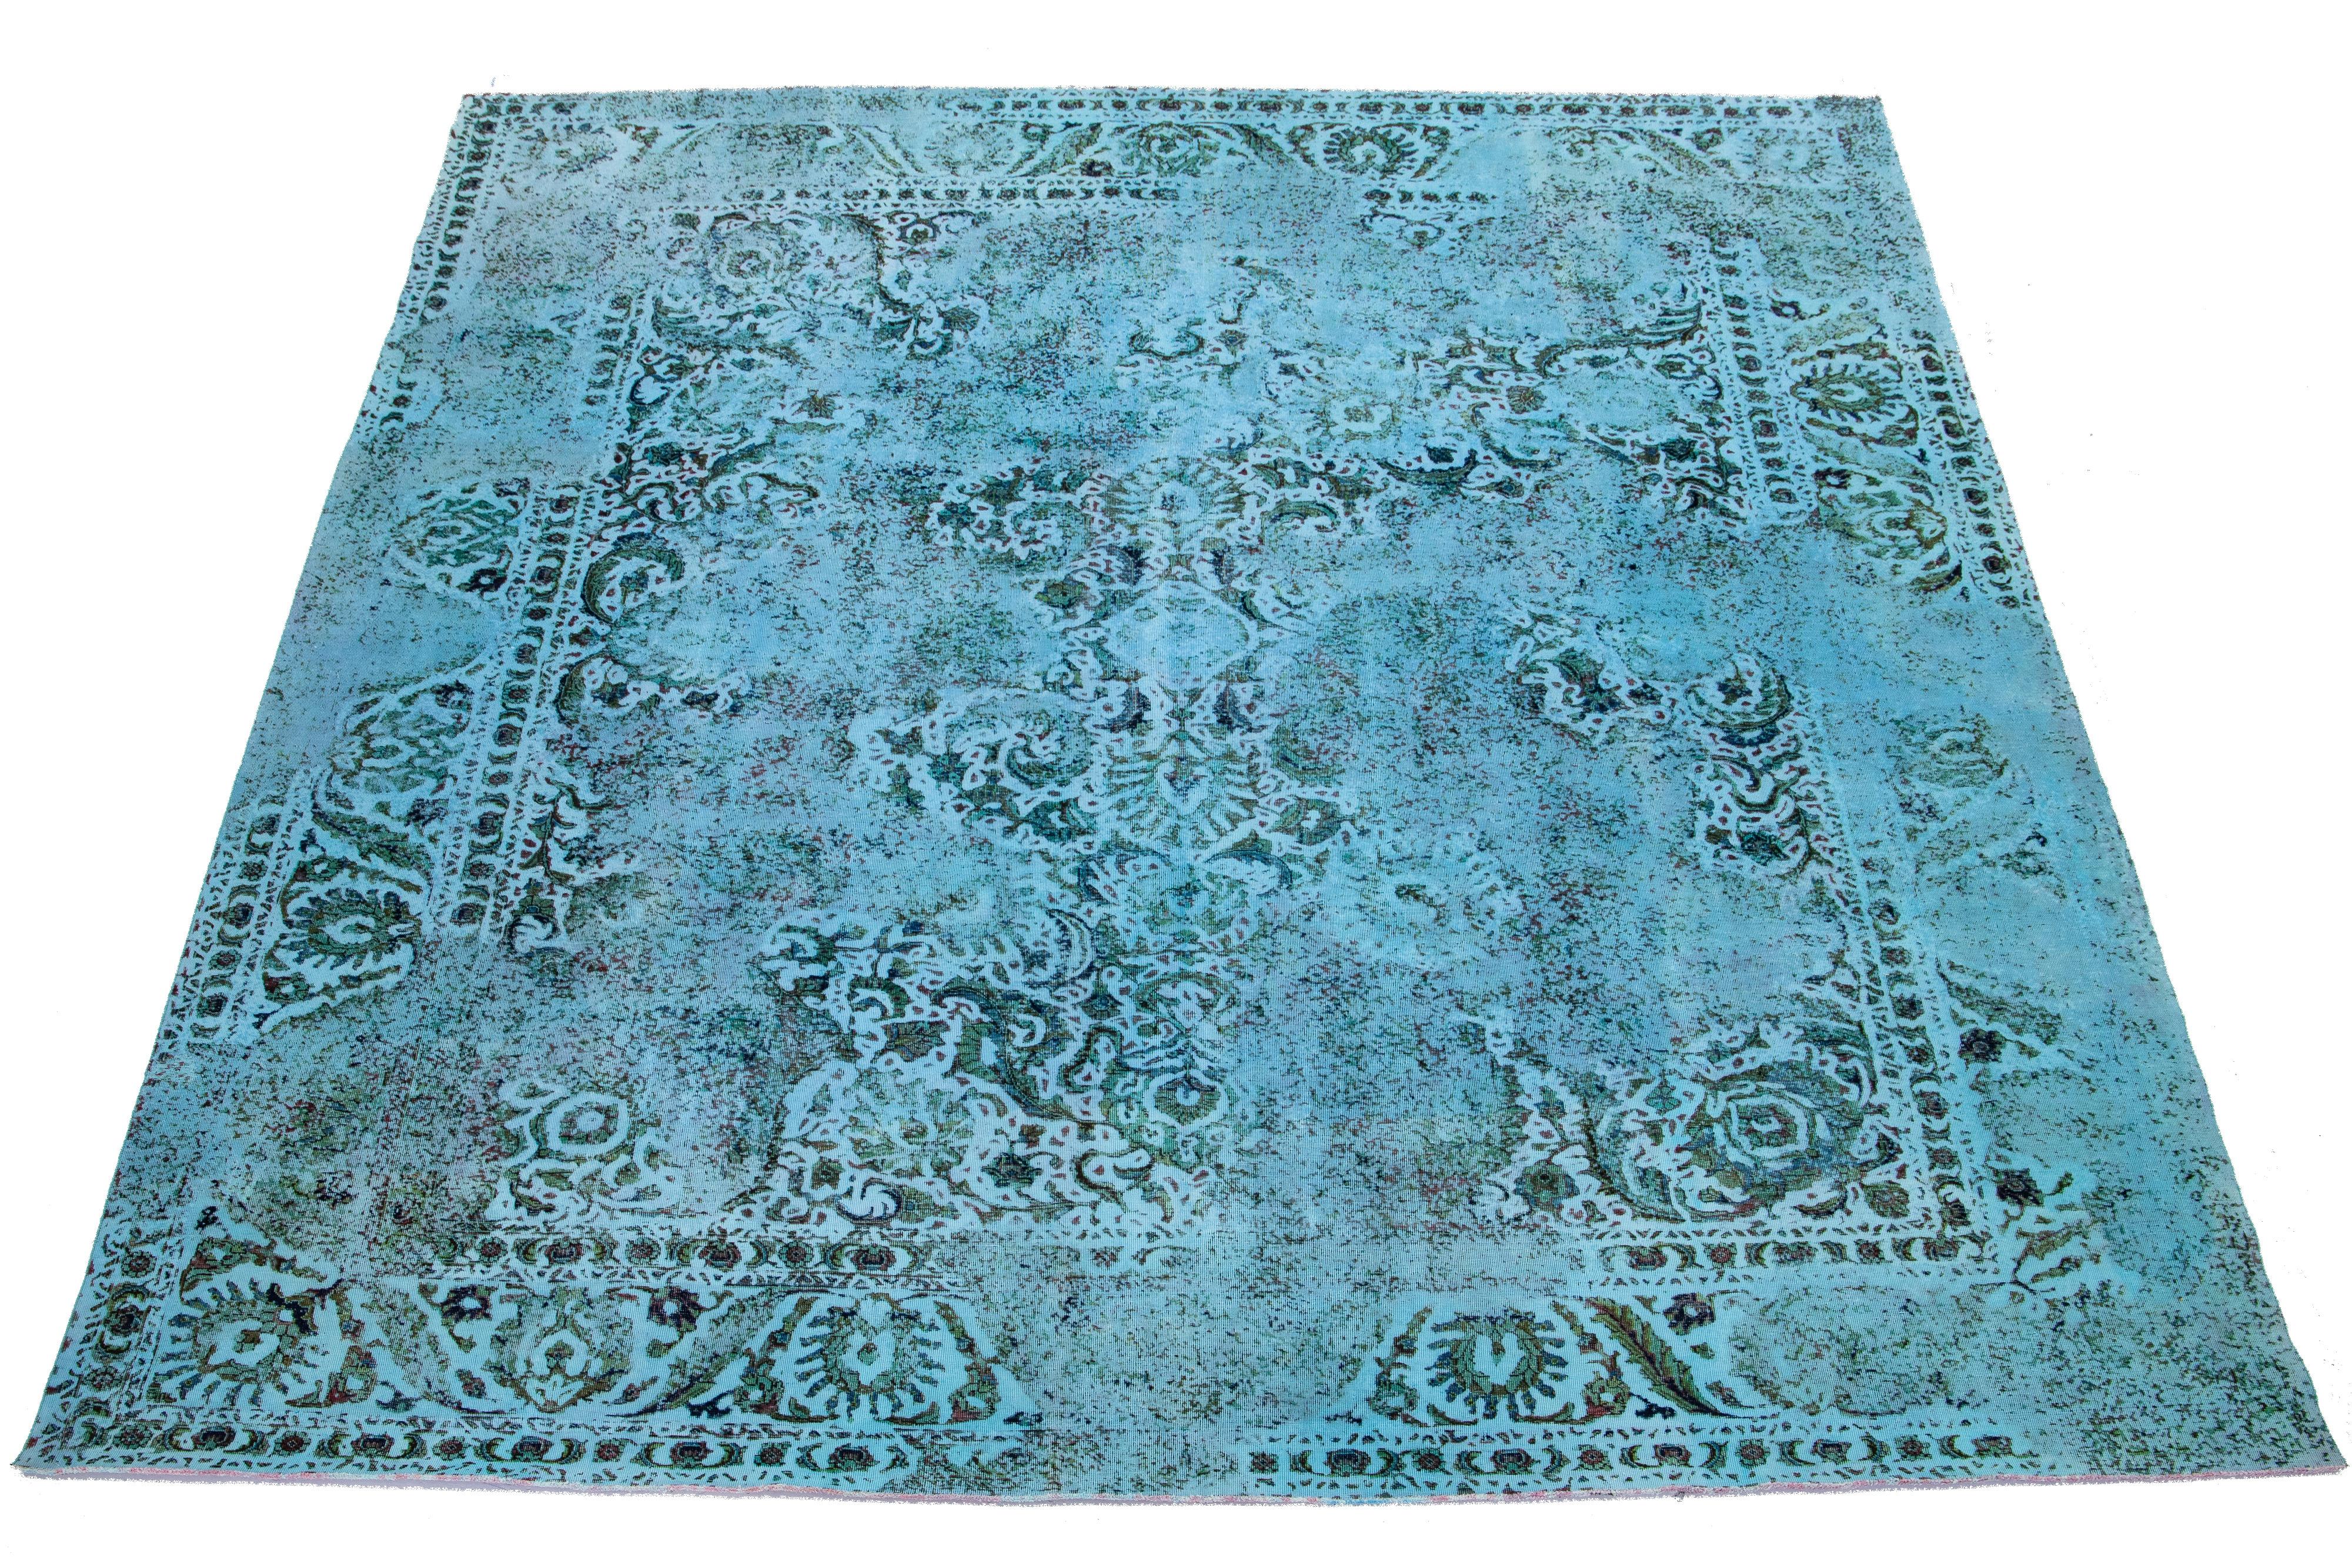 Dies ist ein blauer, antiker, handgeknüpfter Teppich aus persischer Wolle mit einem floralen Allover-Muster und grauen Akzenten.

Dieser Teppich misst 11'3'' x 13'5